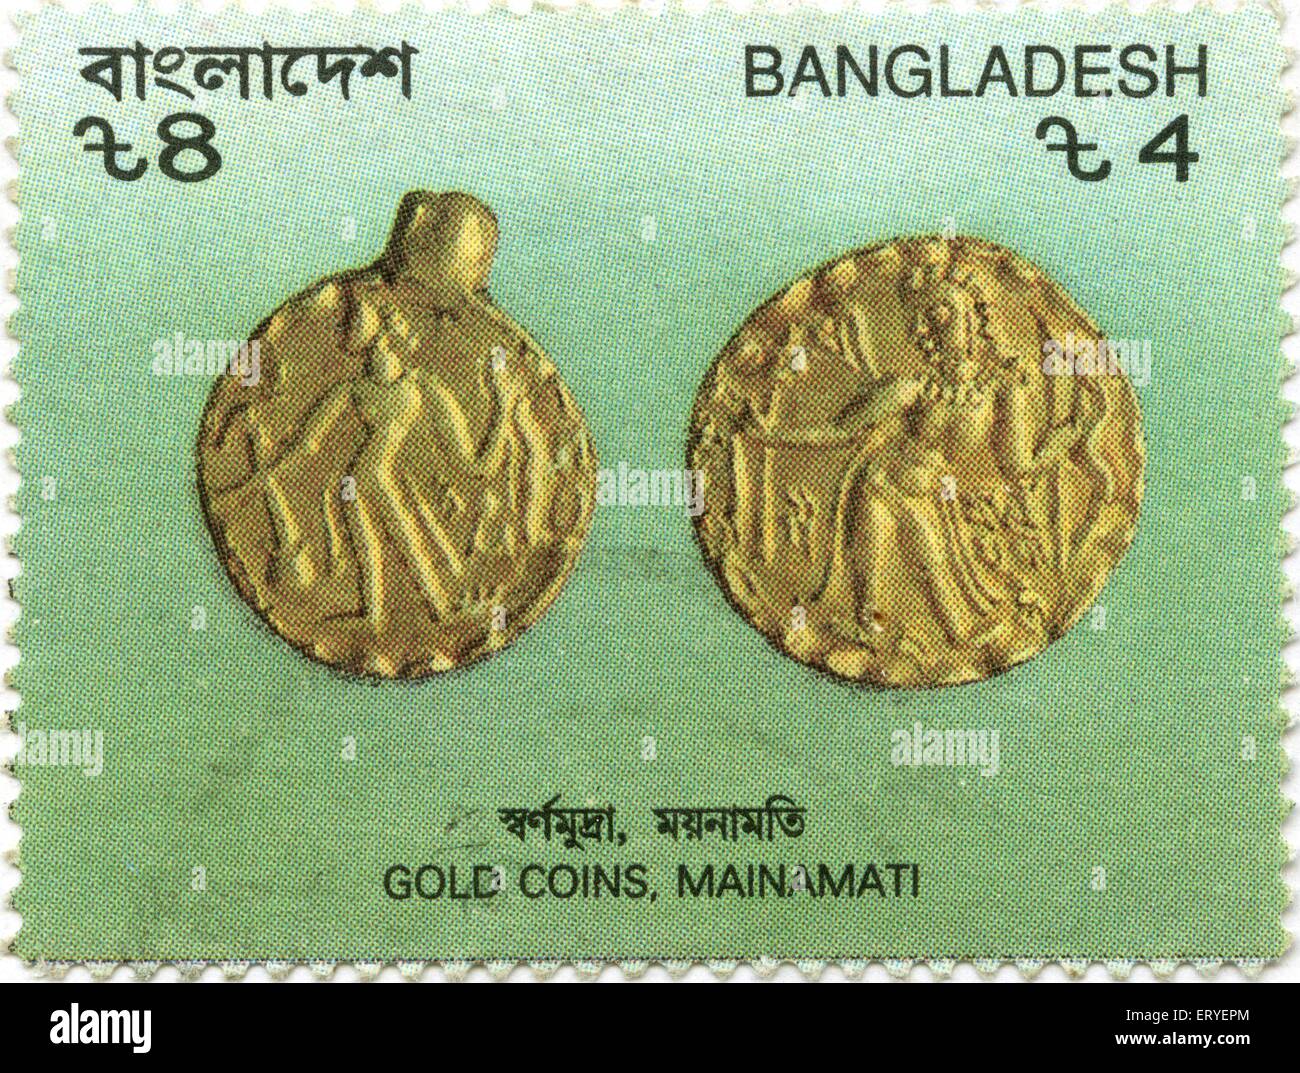 Bangladesh Briefmarke , Briefmarke von Goldmünzen ; Mainamati ; Comilla , Bangladesch , asien Stockfoto